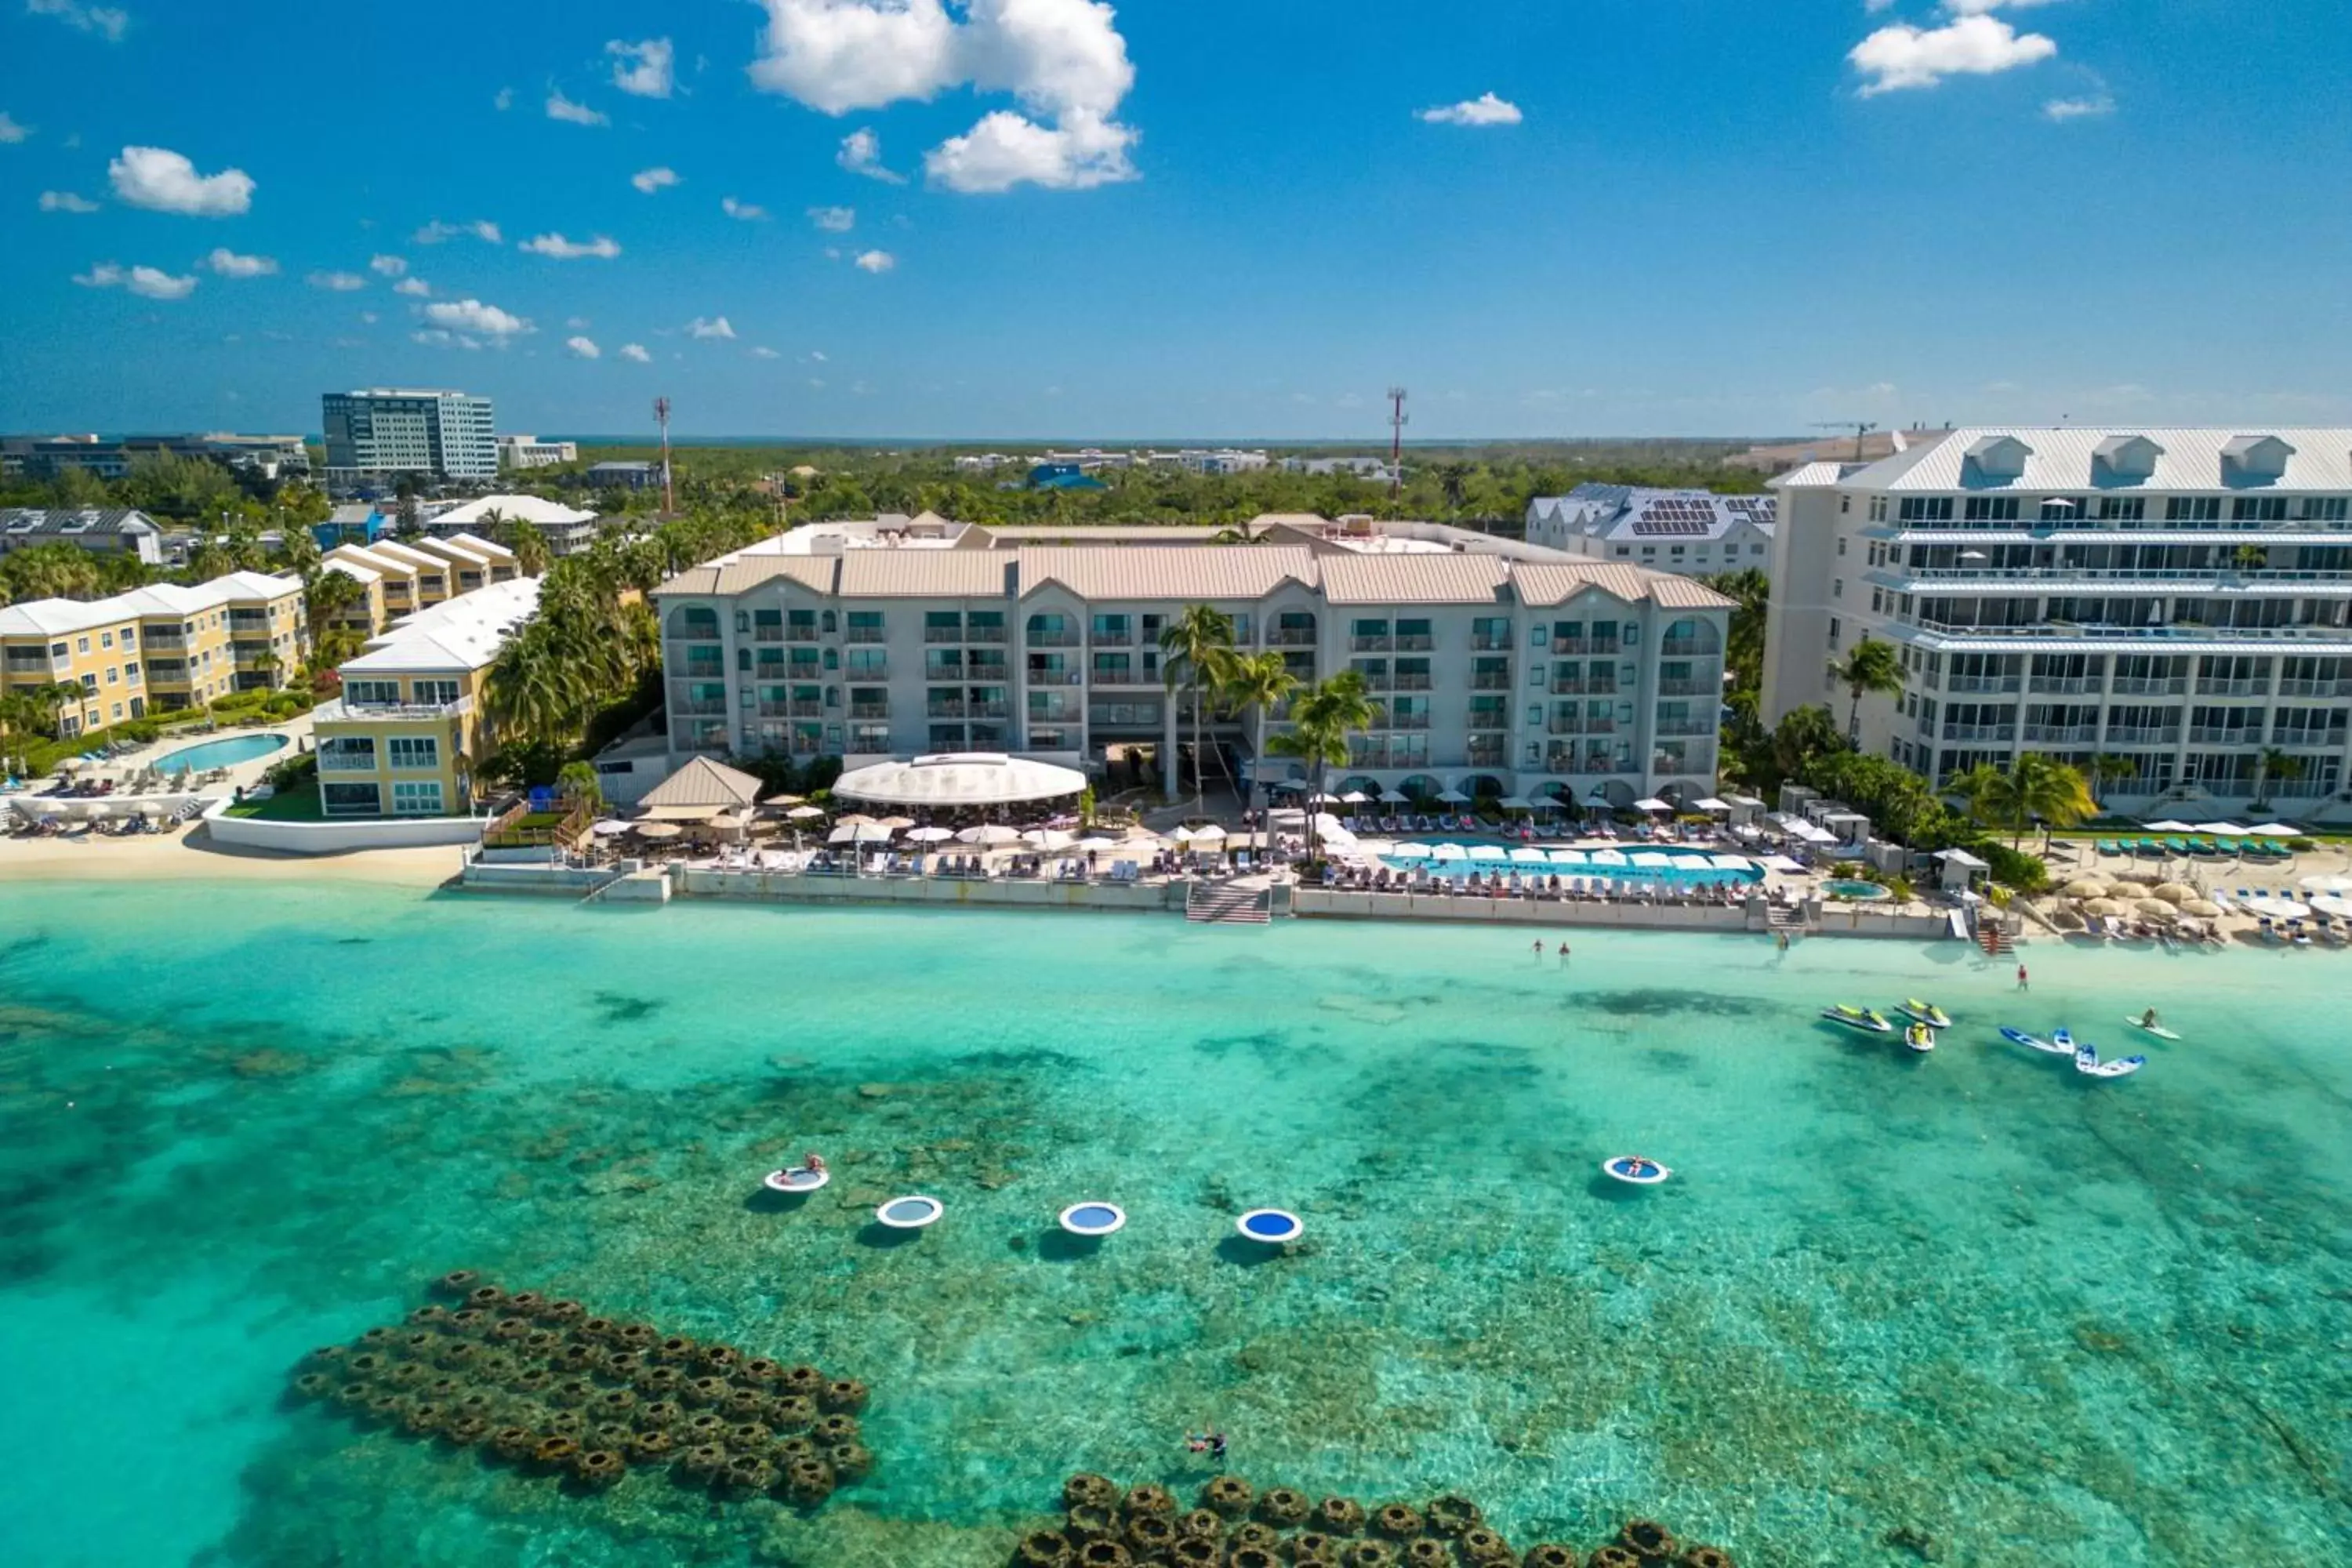 Property building, Bird's-eye View in Grand Cayman Marriott Resort